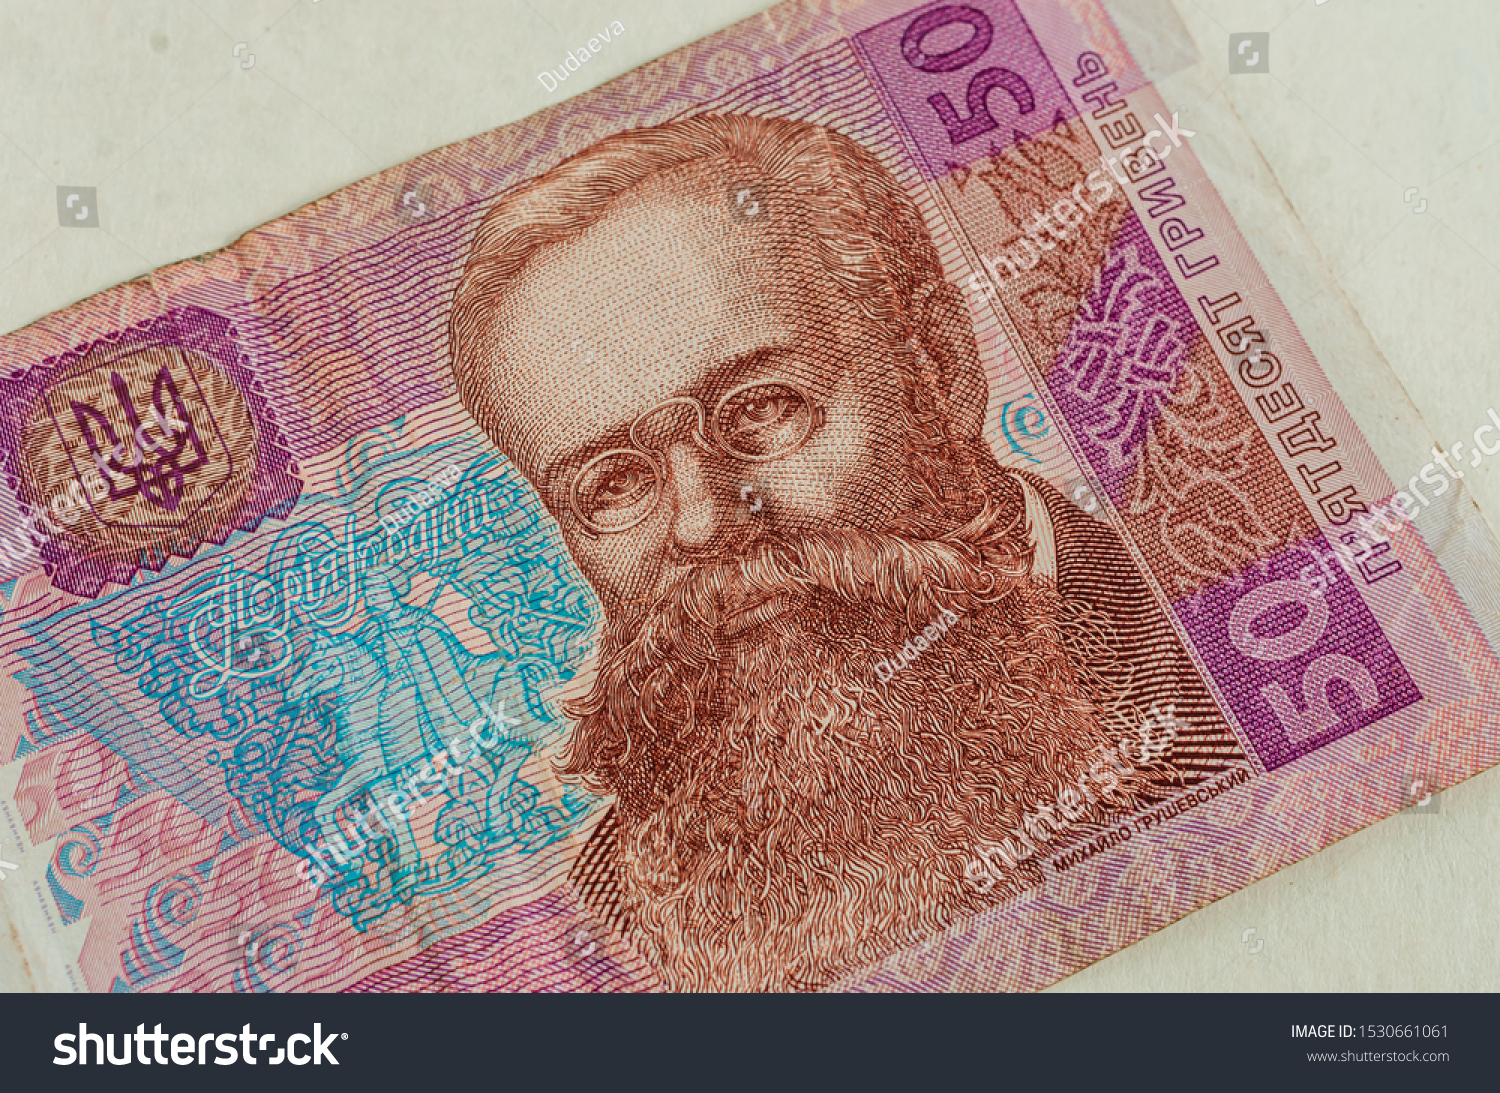 10 тыс гривен. 50 Гривен купюра. 50 Гривен портрет Грушевского. Купюра 50 грн.